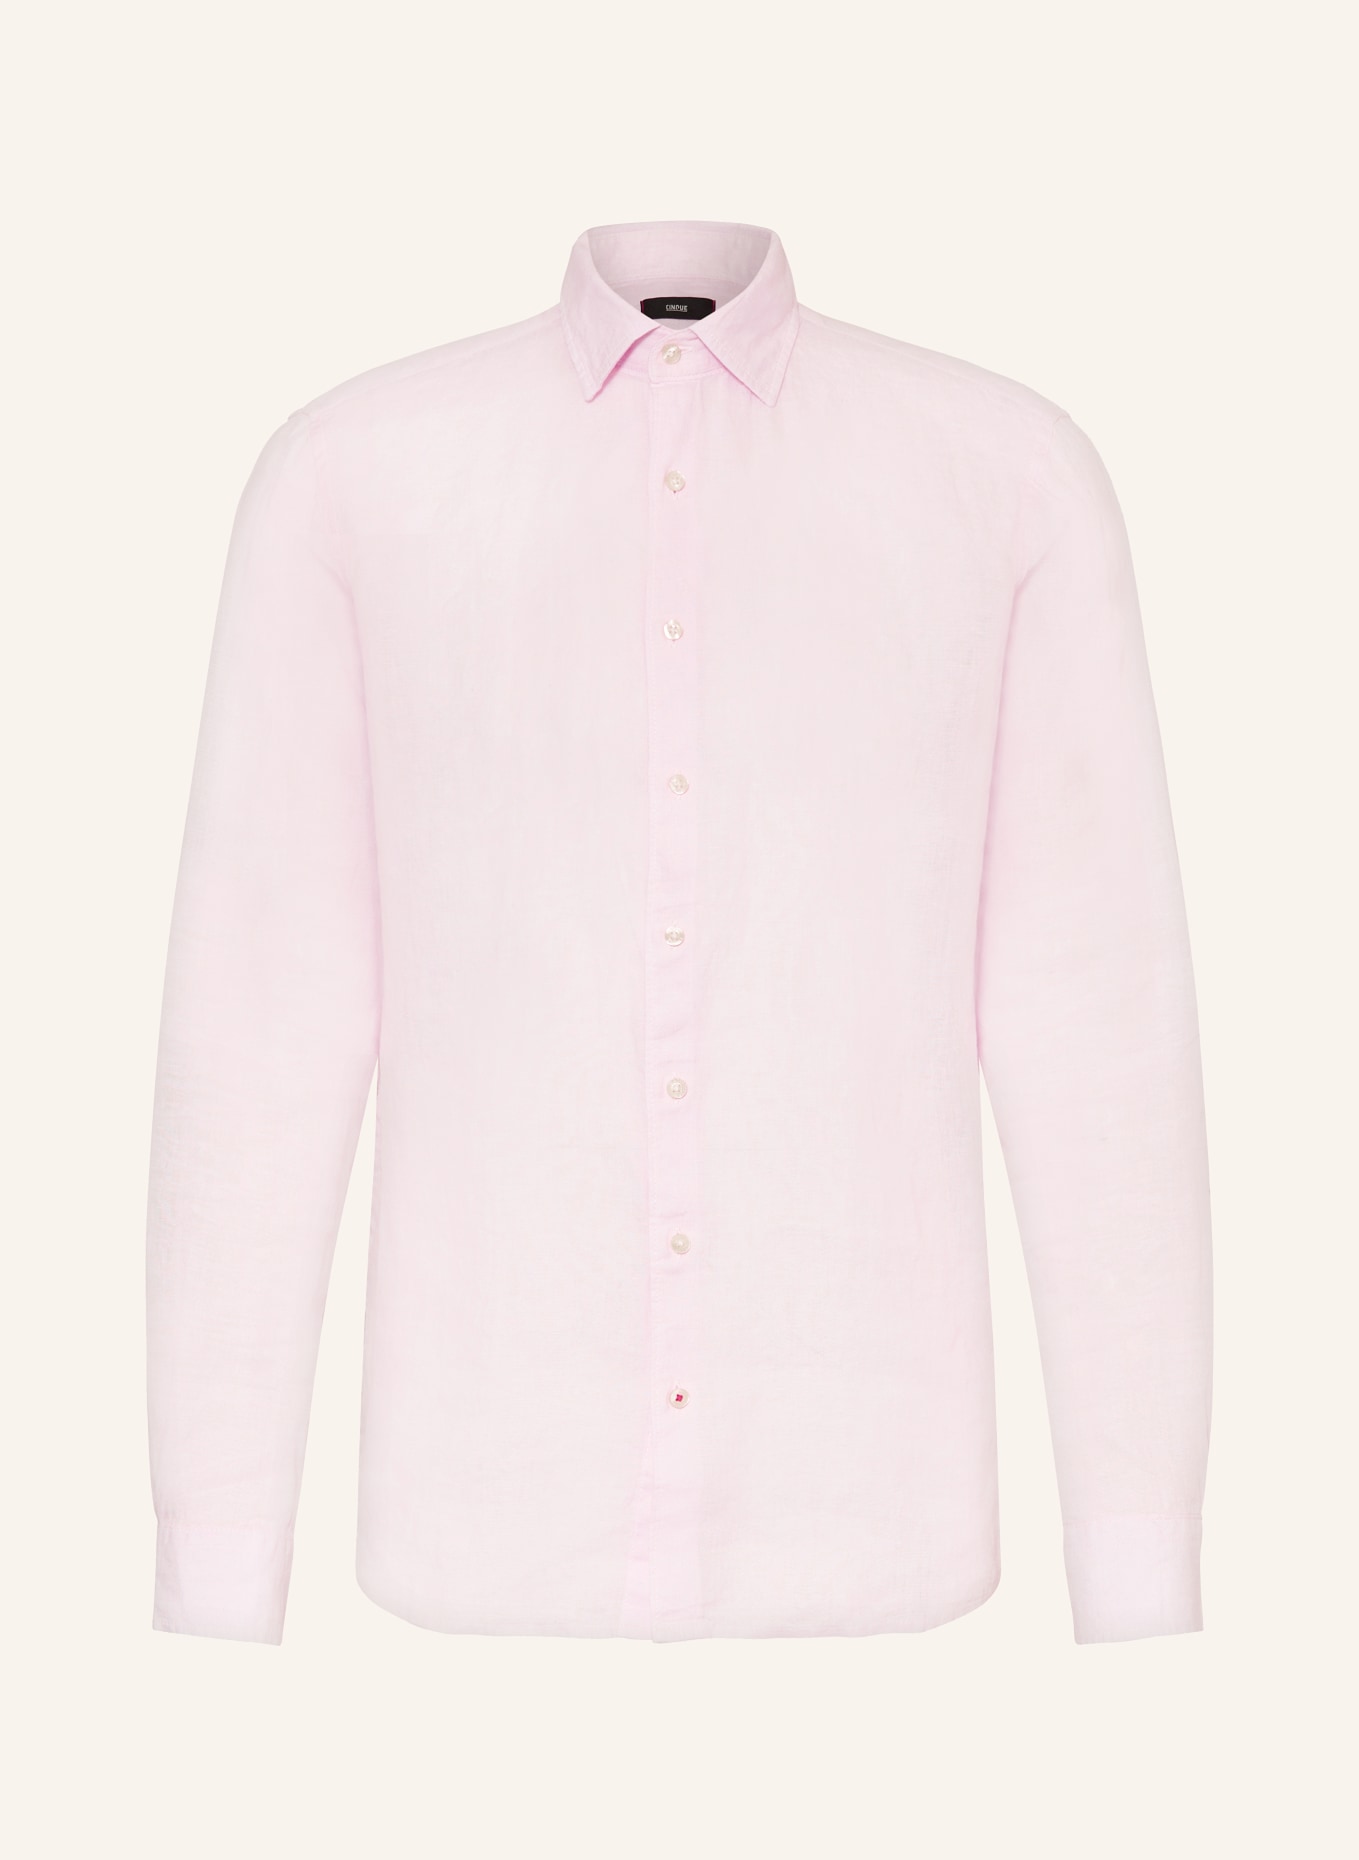 CINQUE Linen shirt CISTEVEN regular fit, Color: PINK (Image 1)